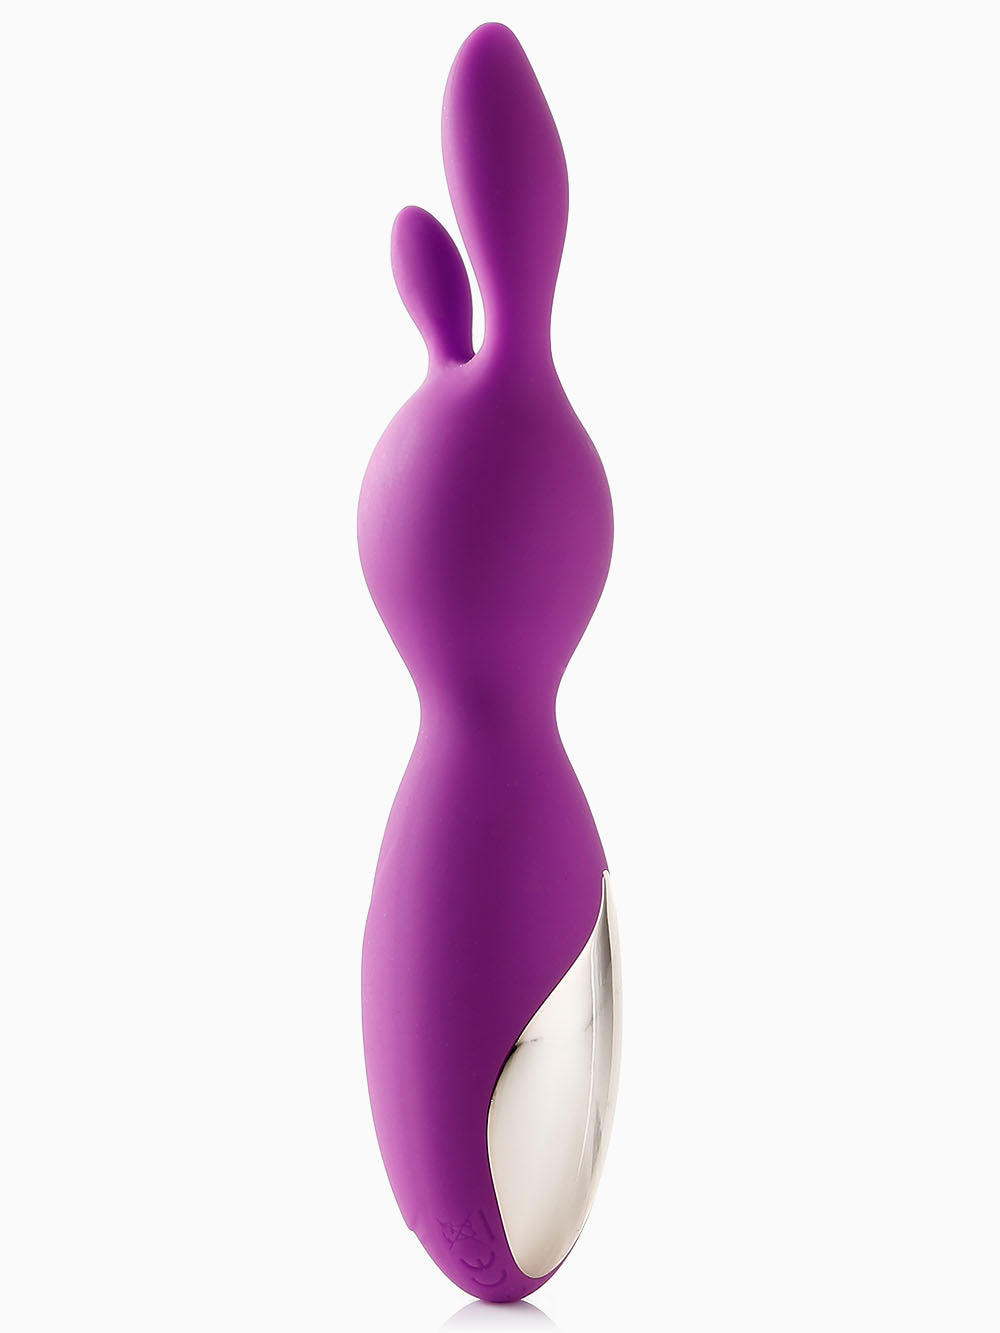 Pillow Talk Fantasy Rabbit Vibrator Purple, 6 Inches